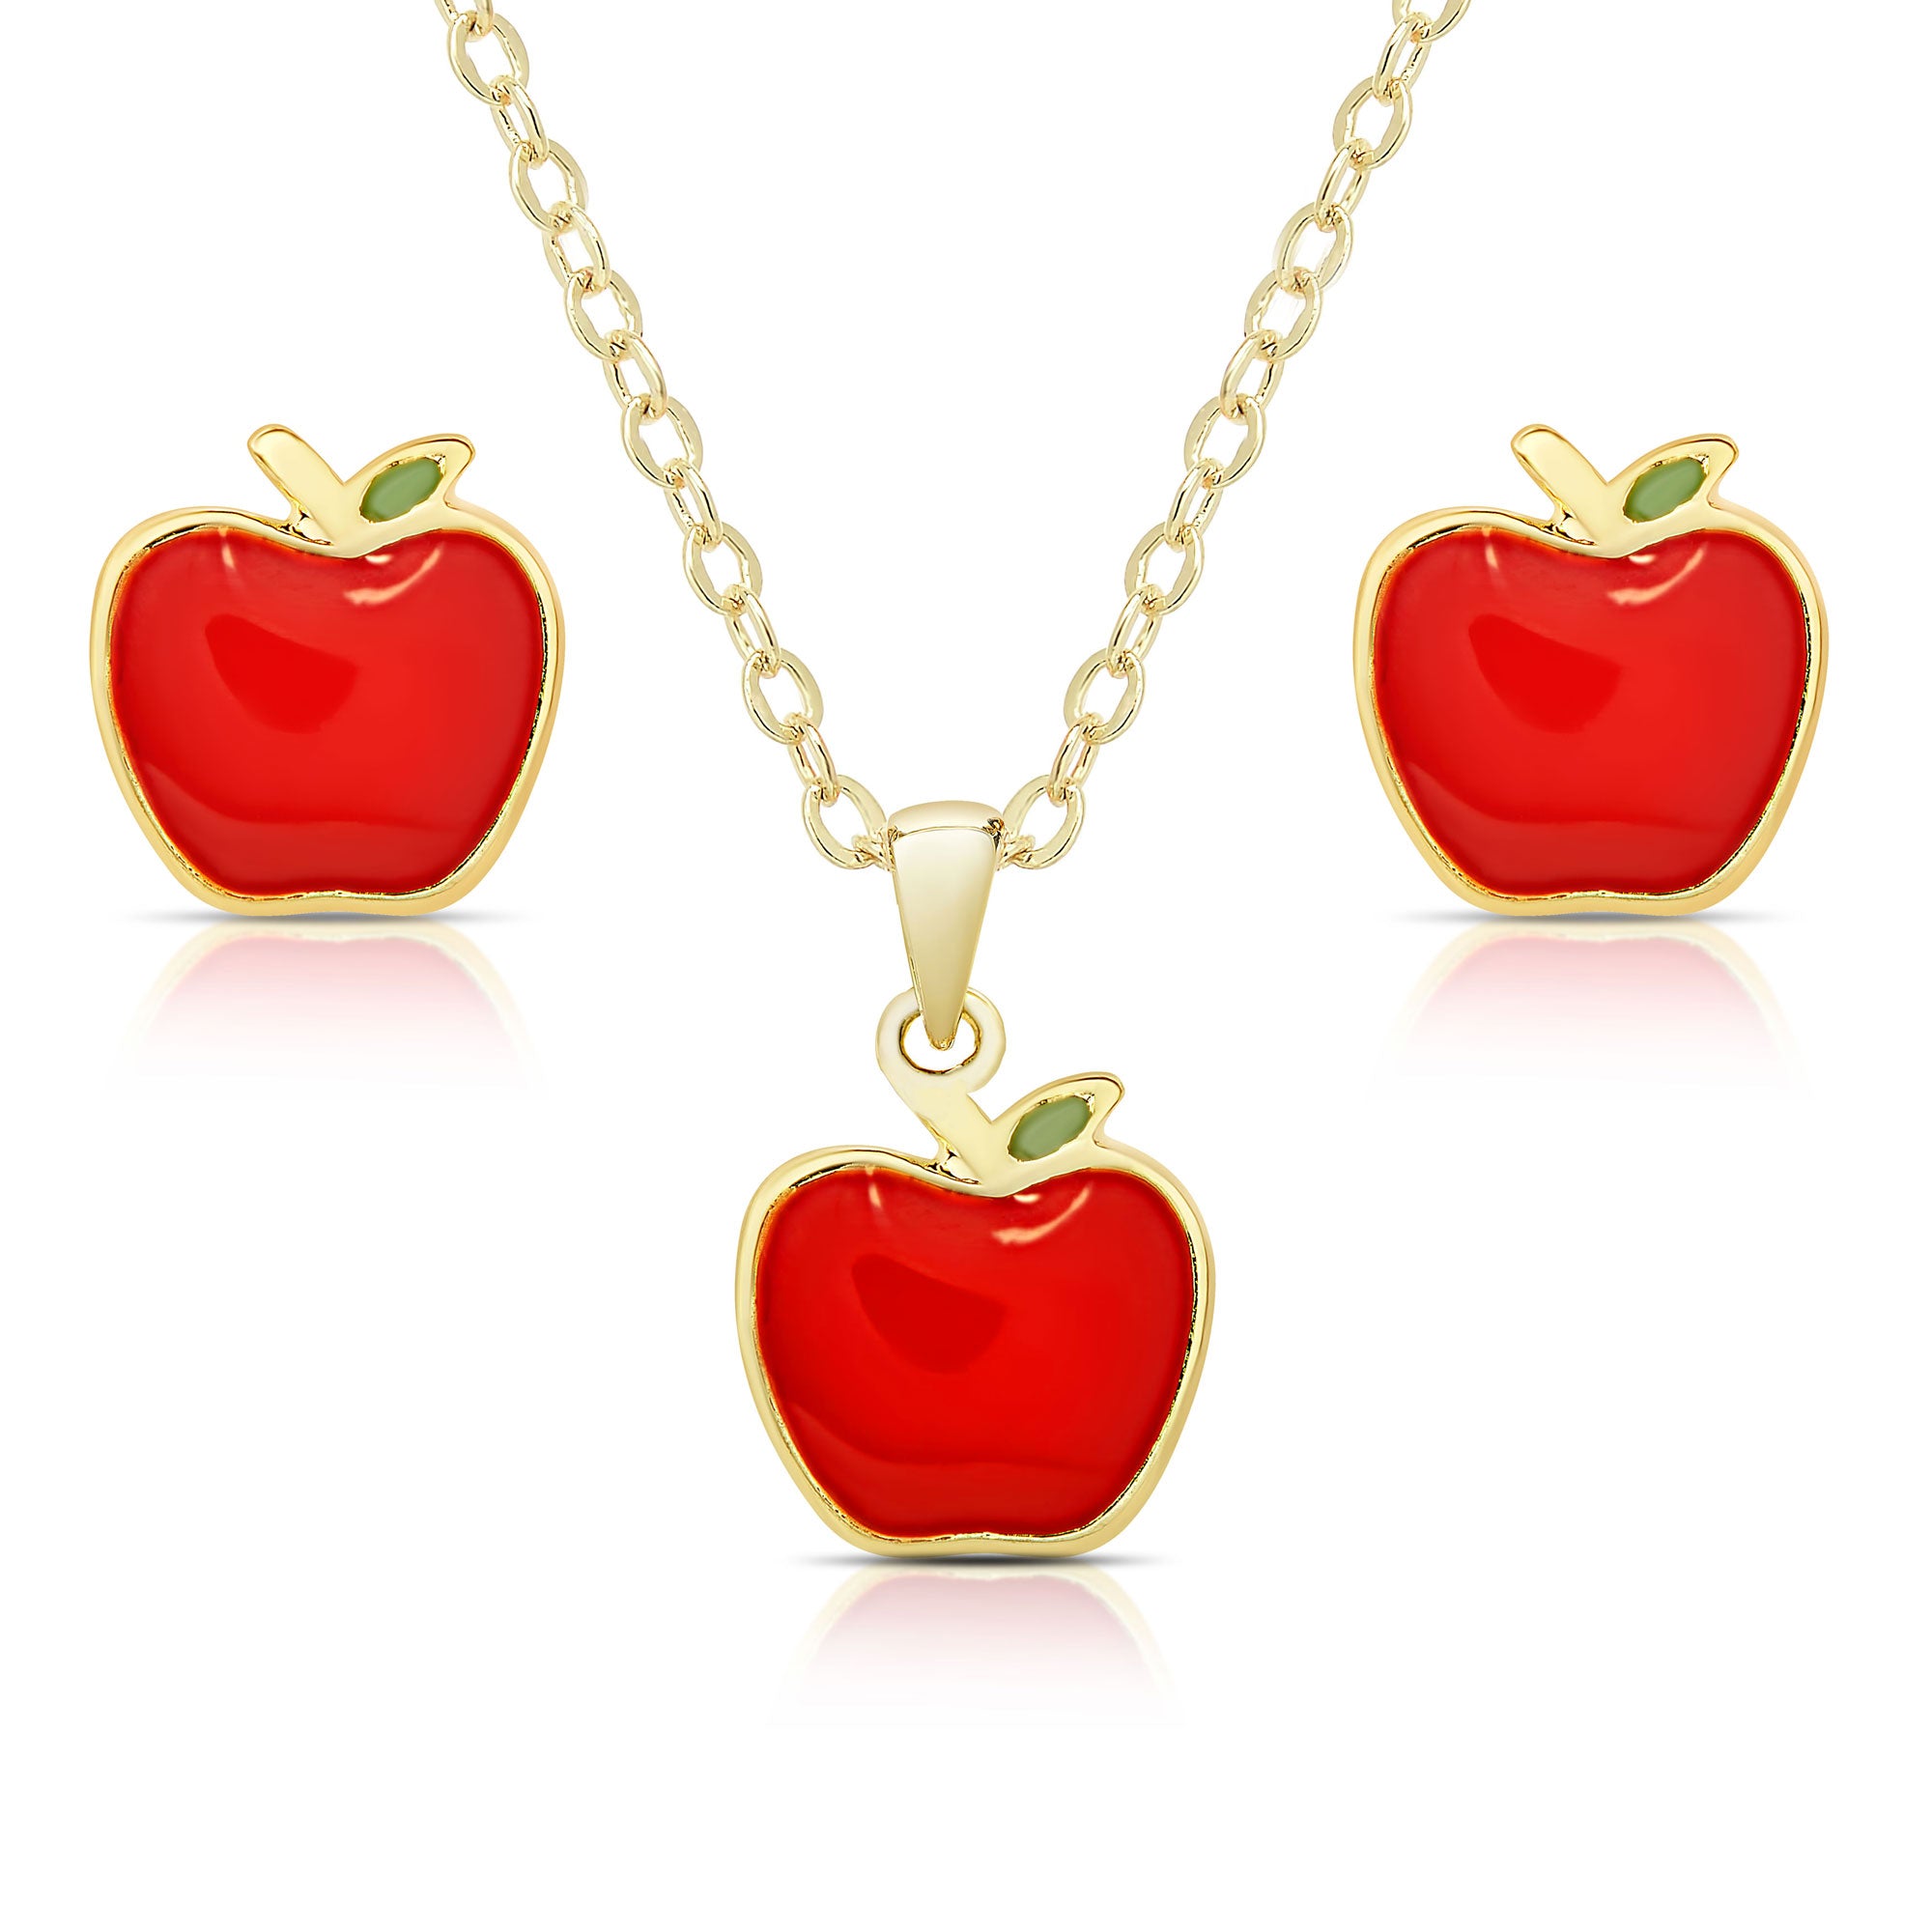 Tiny Red Enamel Apple Necklace - Teacher Gift Apple Fruit Charm Pendant NEW  | eBay